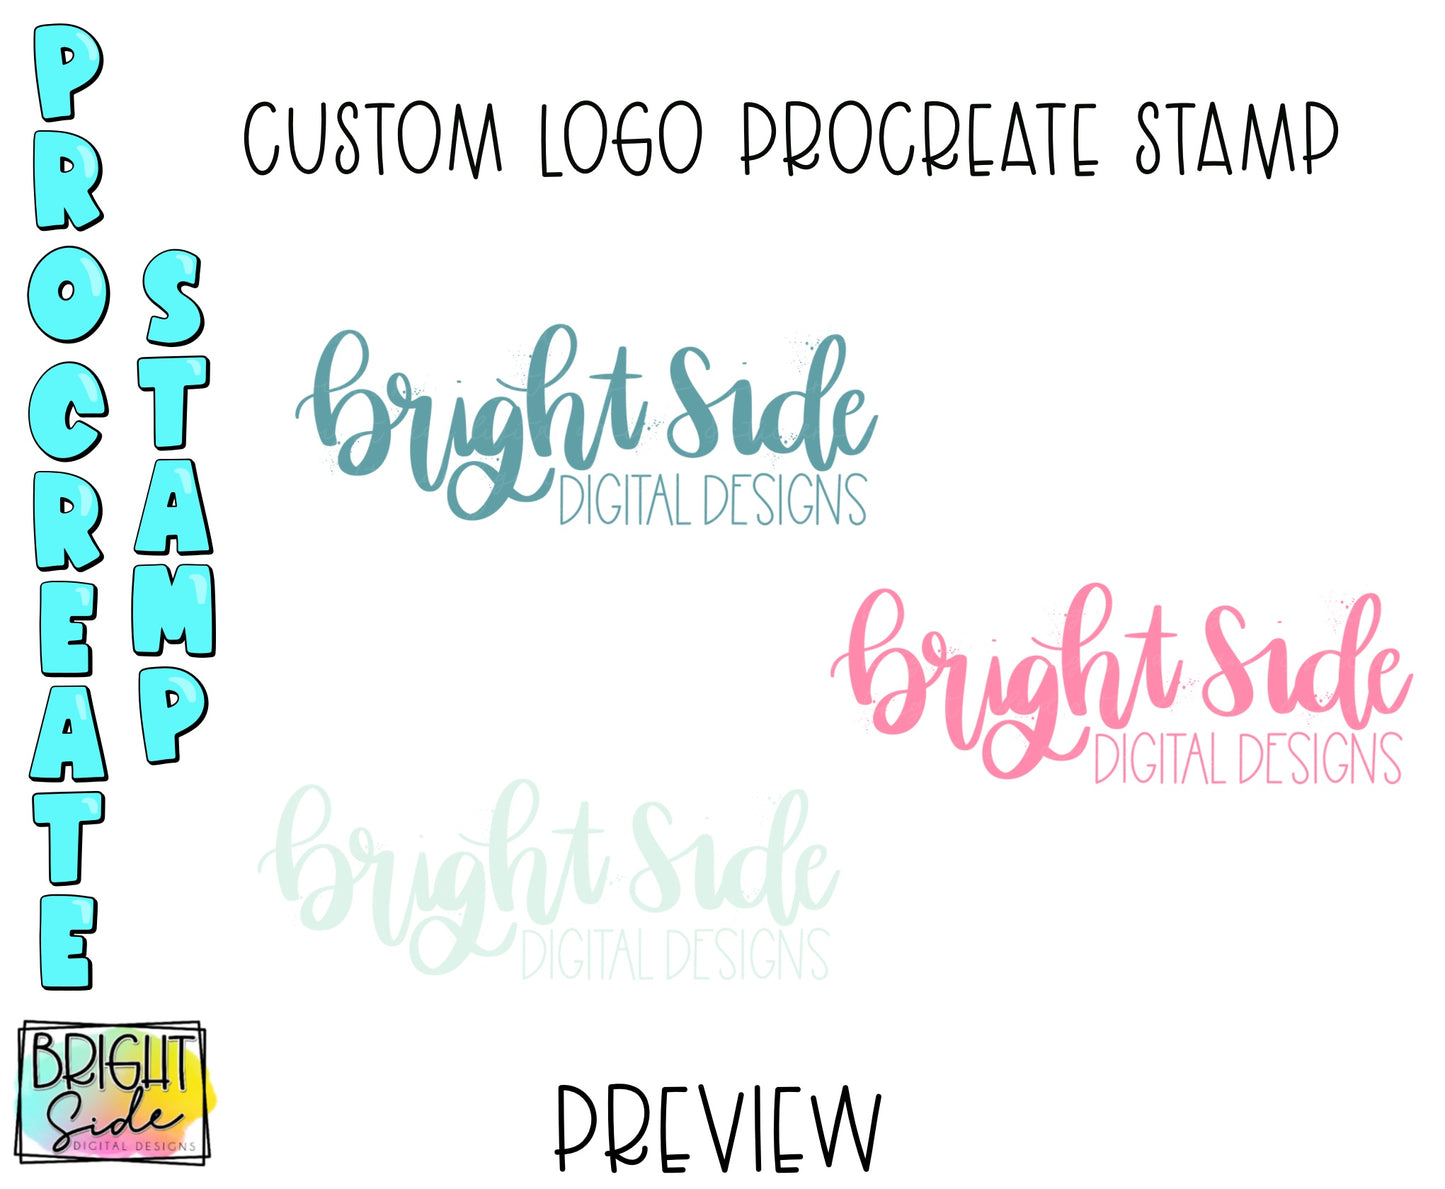 Custom logo Procreate Stamp